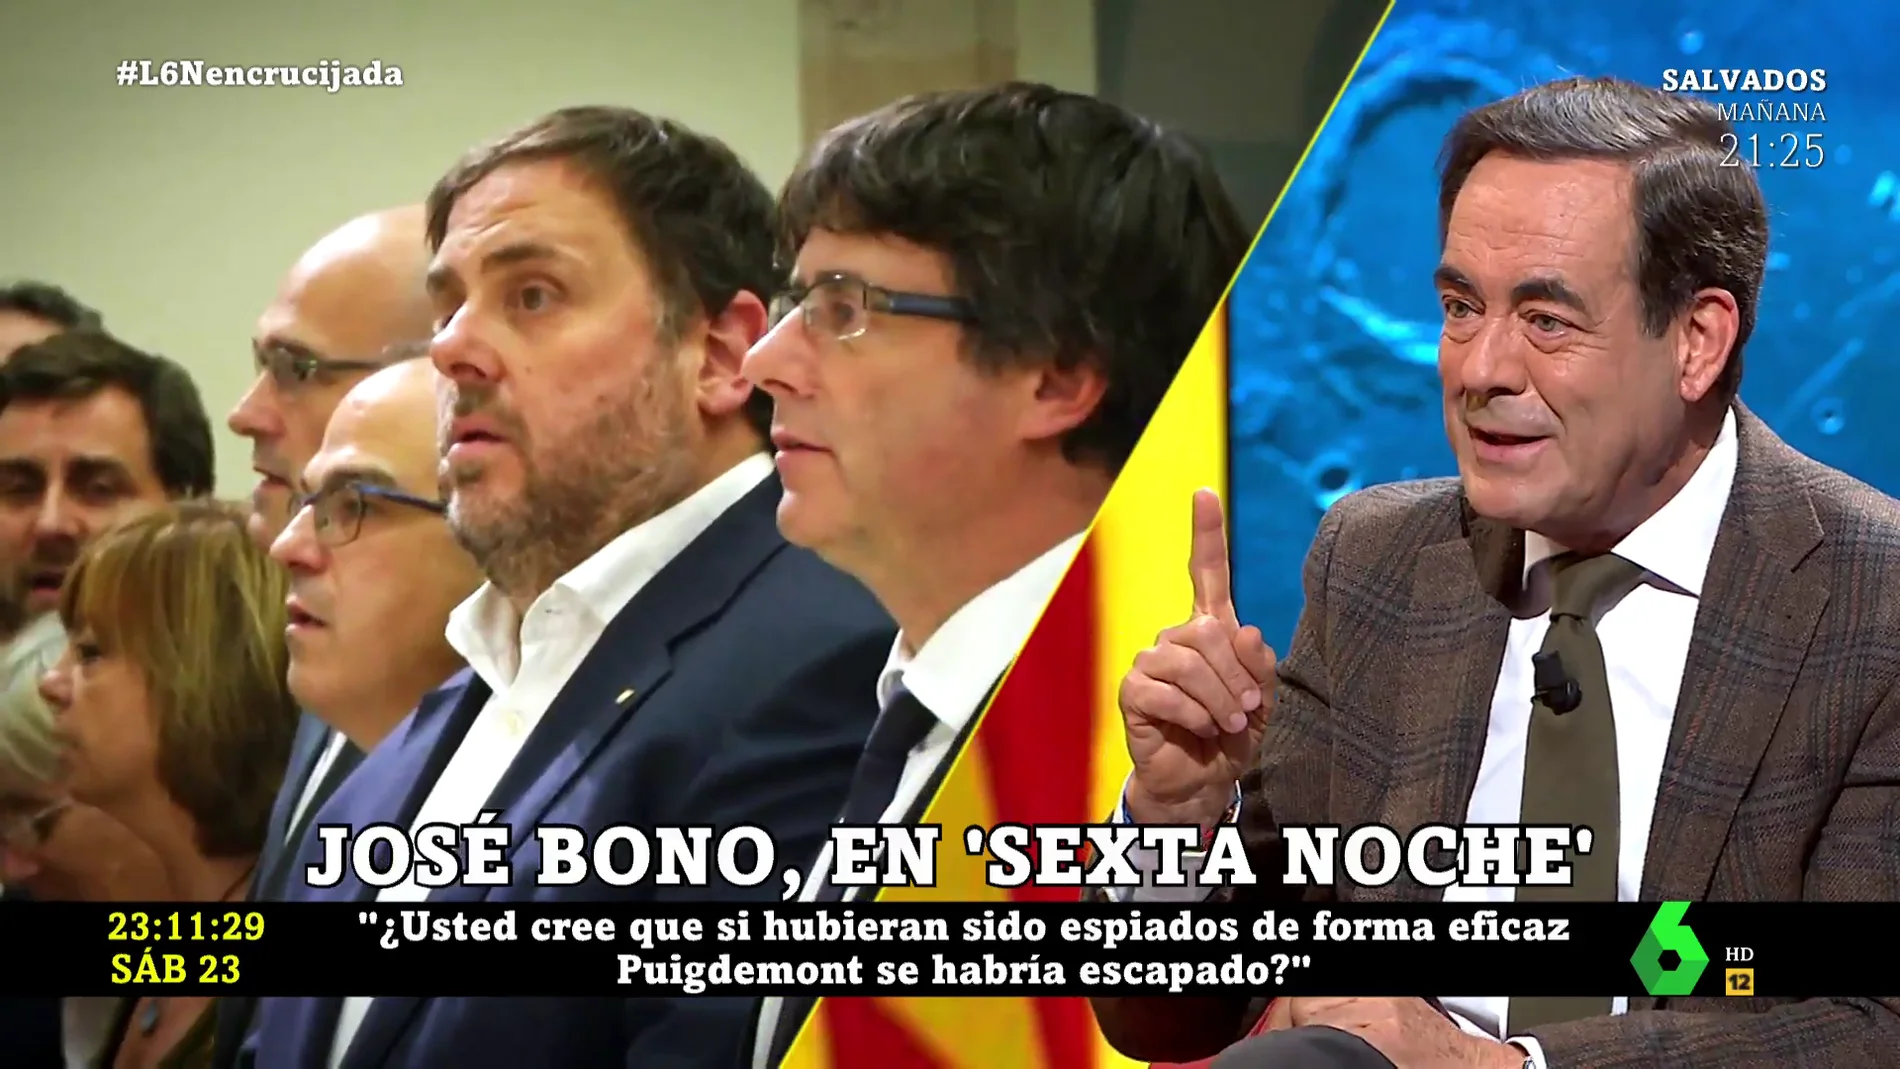 José Bono, escéptico con el espionaje al Govern: "¿Si hubiesen sido espiados de manera eficiente, Puigdemont se habría escapado?"